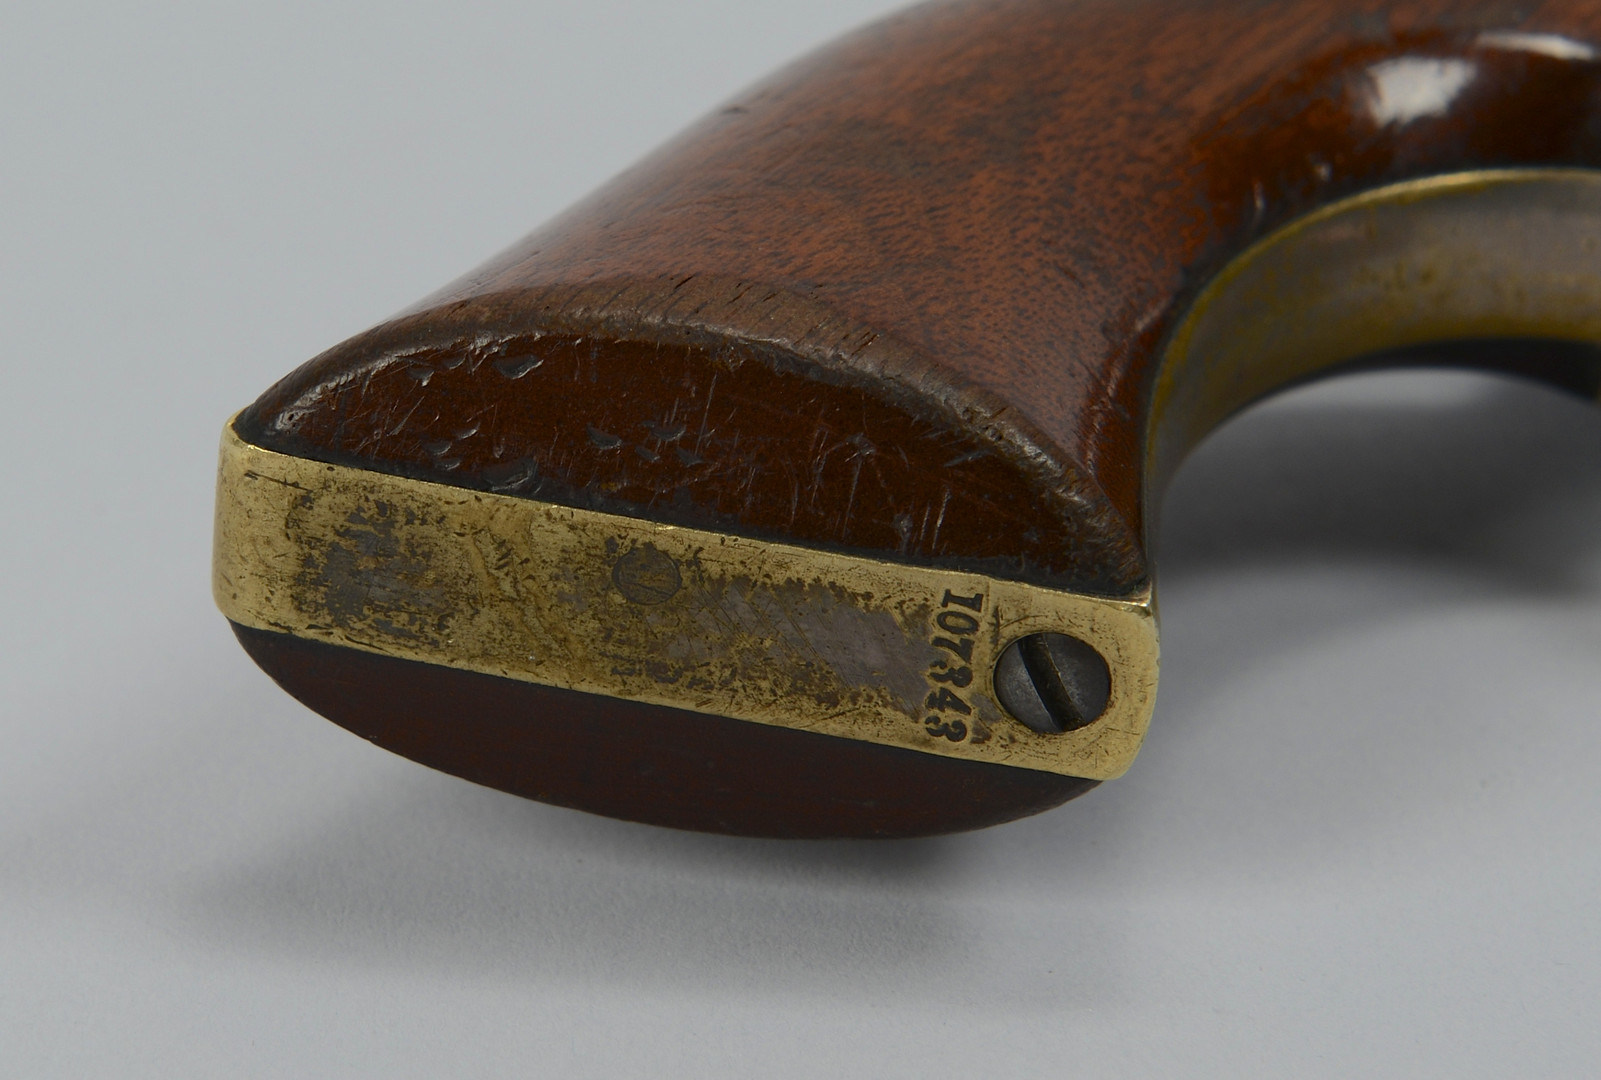 Lot 117: Colt Model 1849 Pocket Revolver, 1855